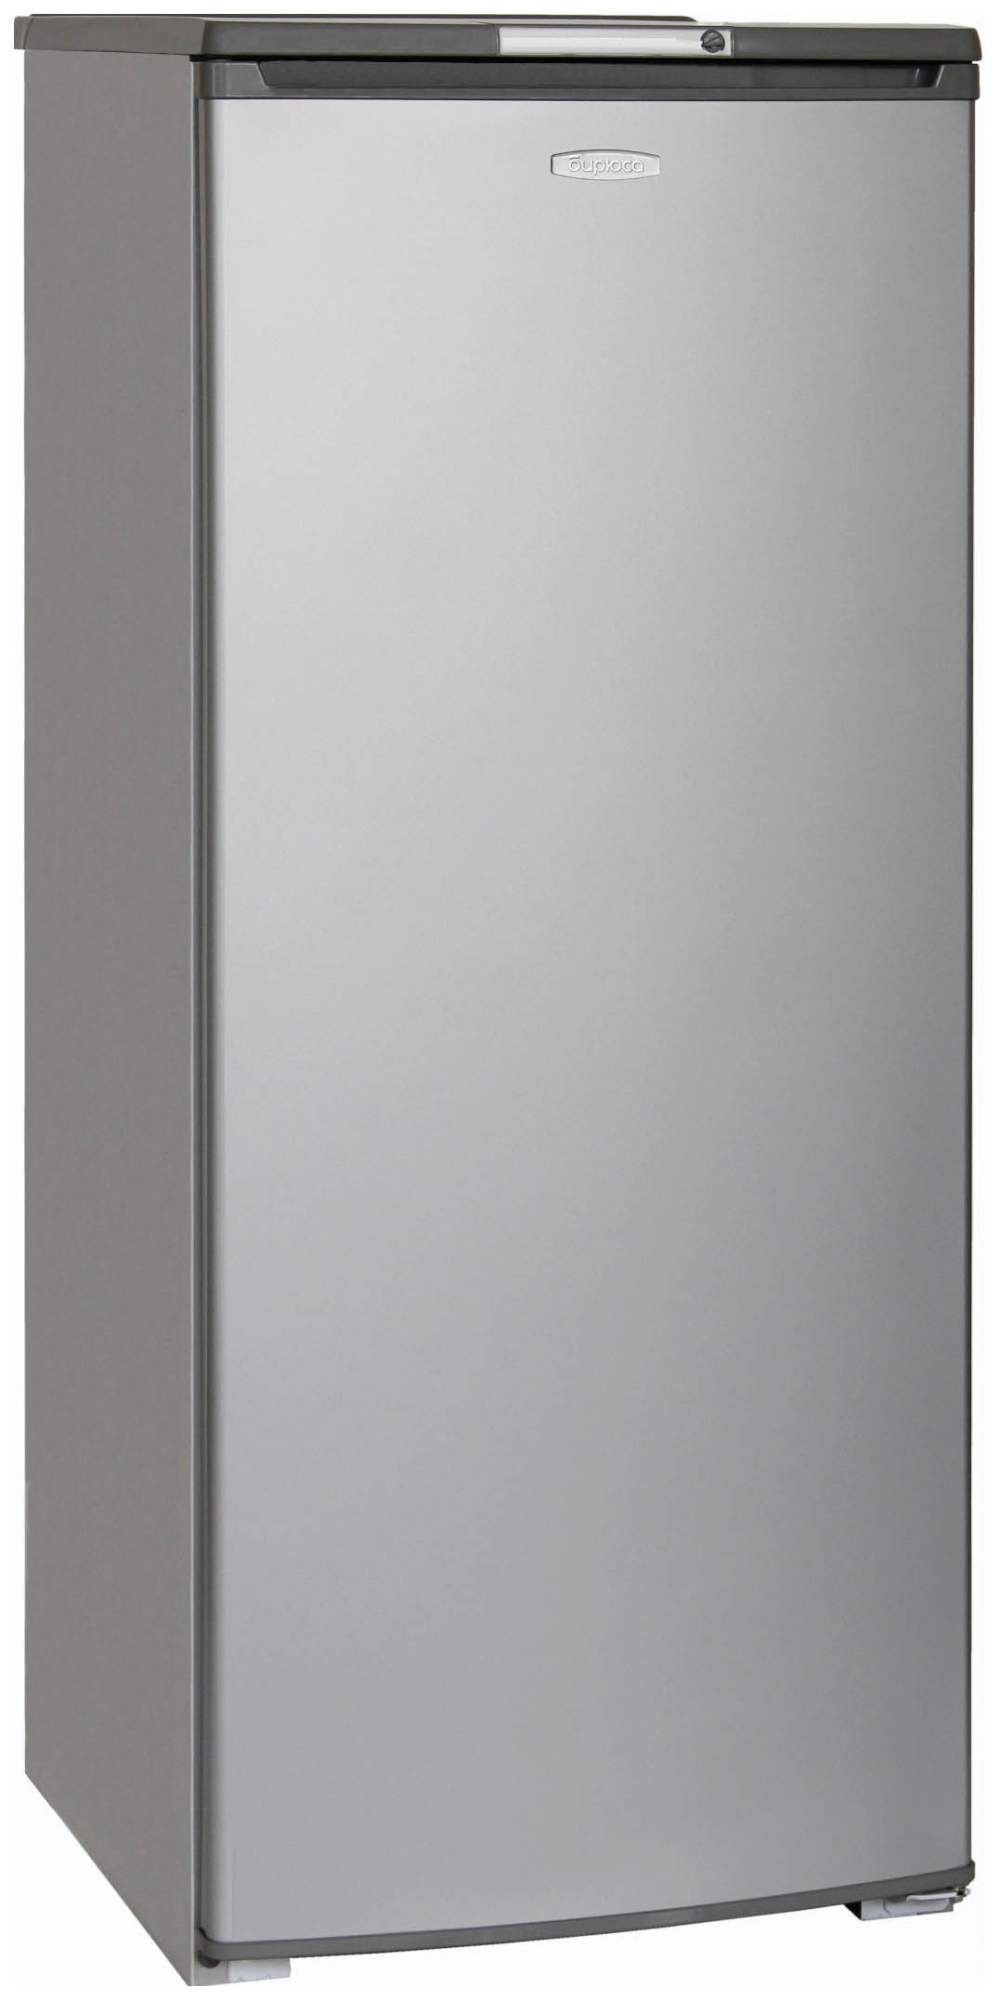 Холодильник Бирюса Б-M6 серый - купить в Technoluxe.ru, цена на Мегамаркет